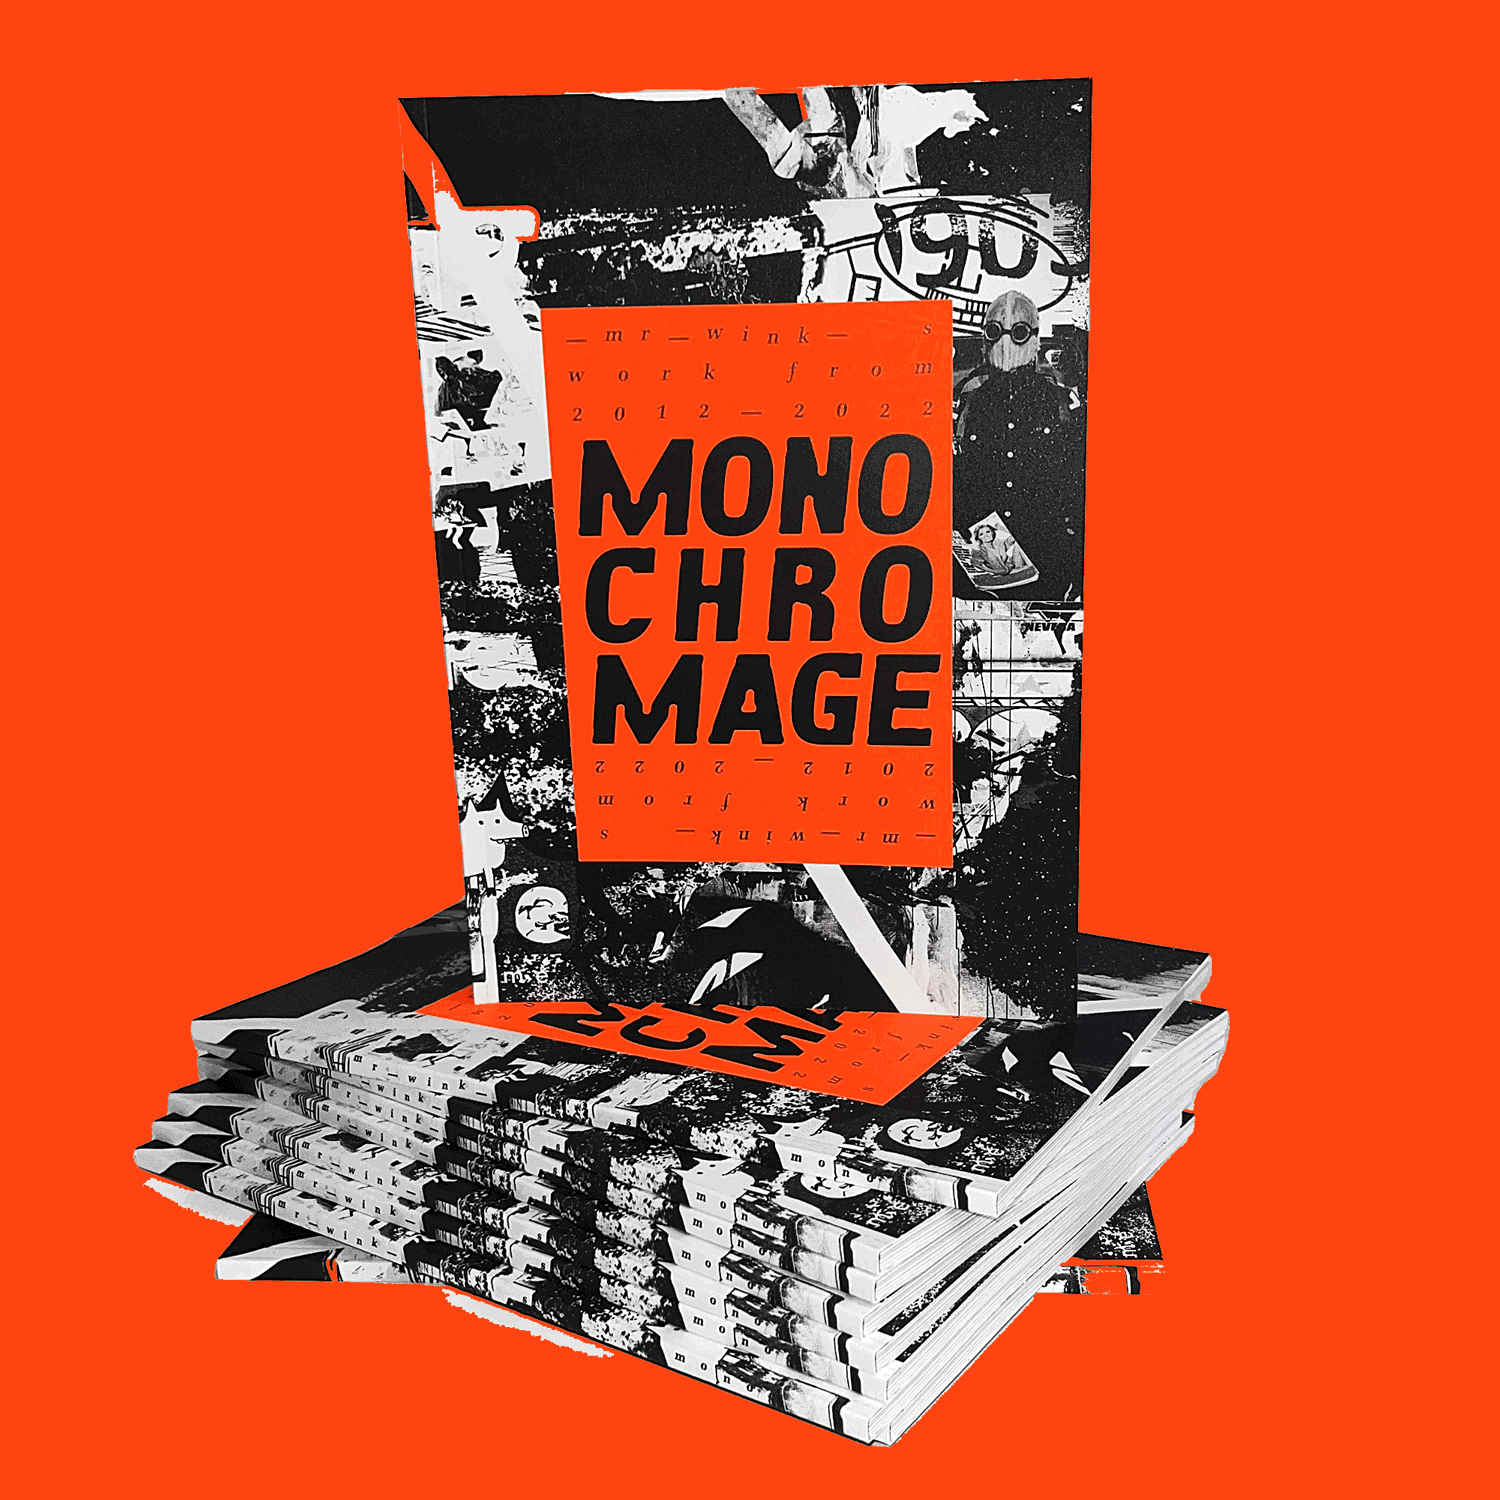 Mono chro mage. Artbook. 1